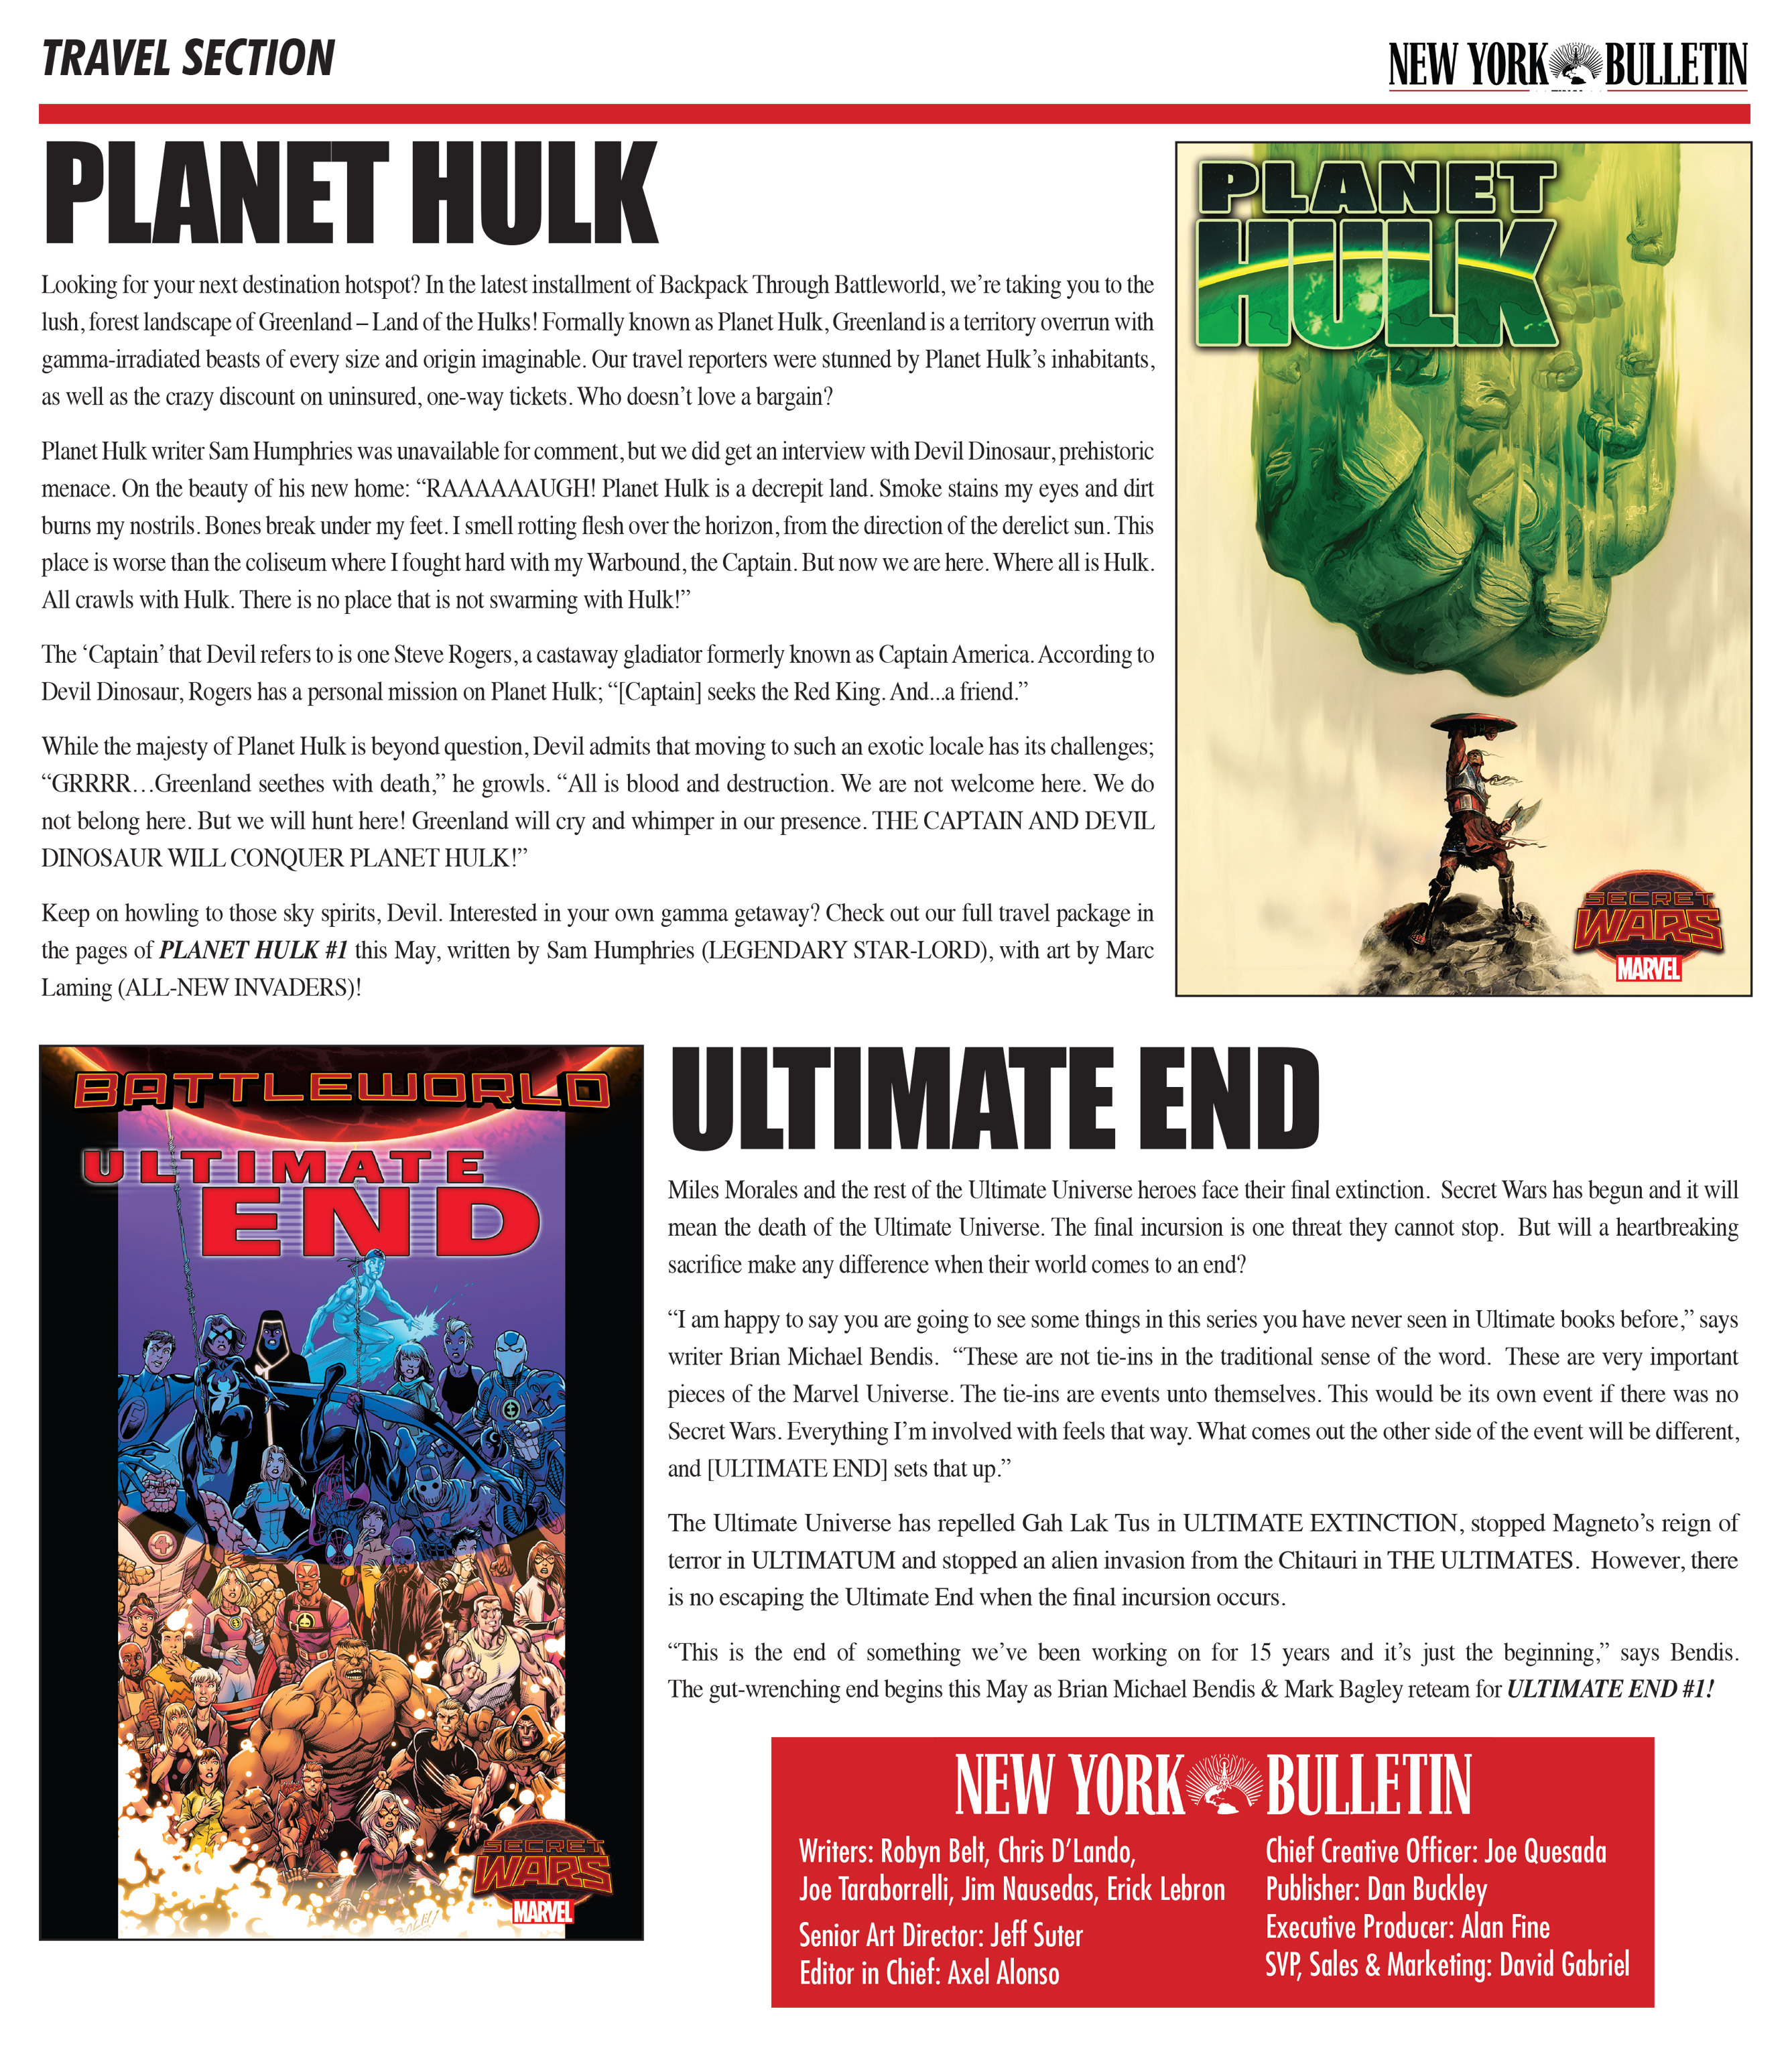 Read online Marvel's New York Bulletin Secret Wars Newspaper comic -  Issue # Full - 5